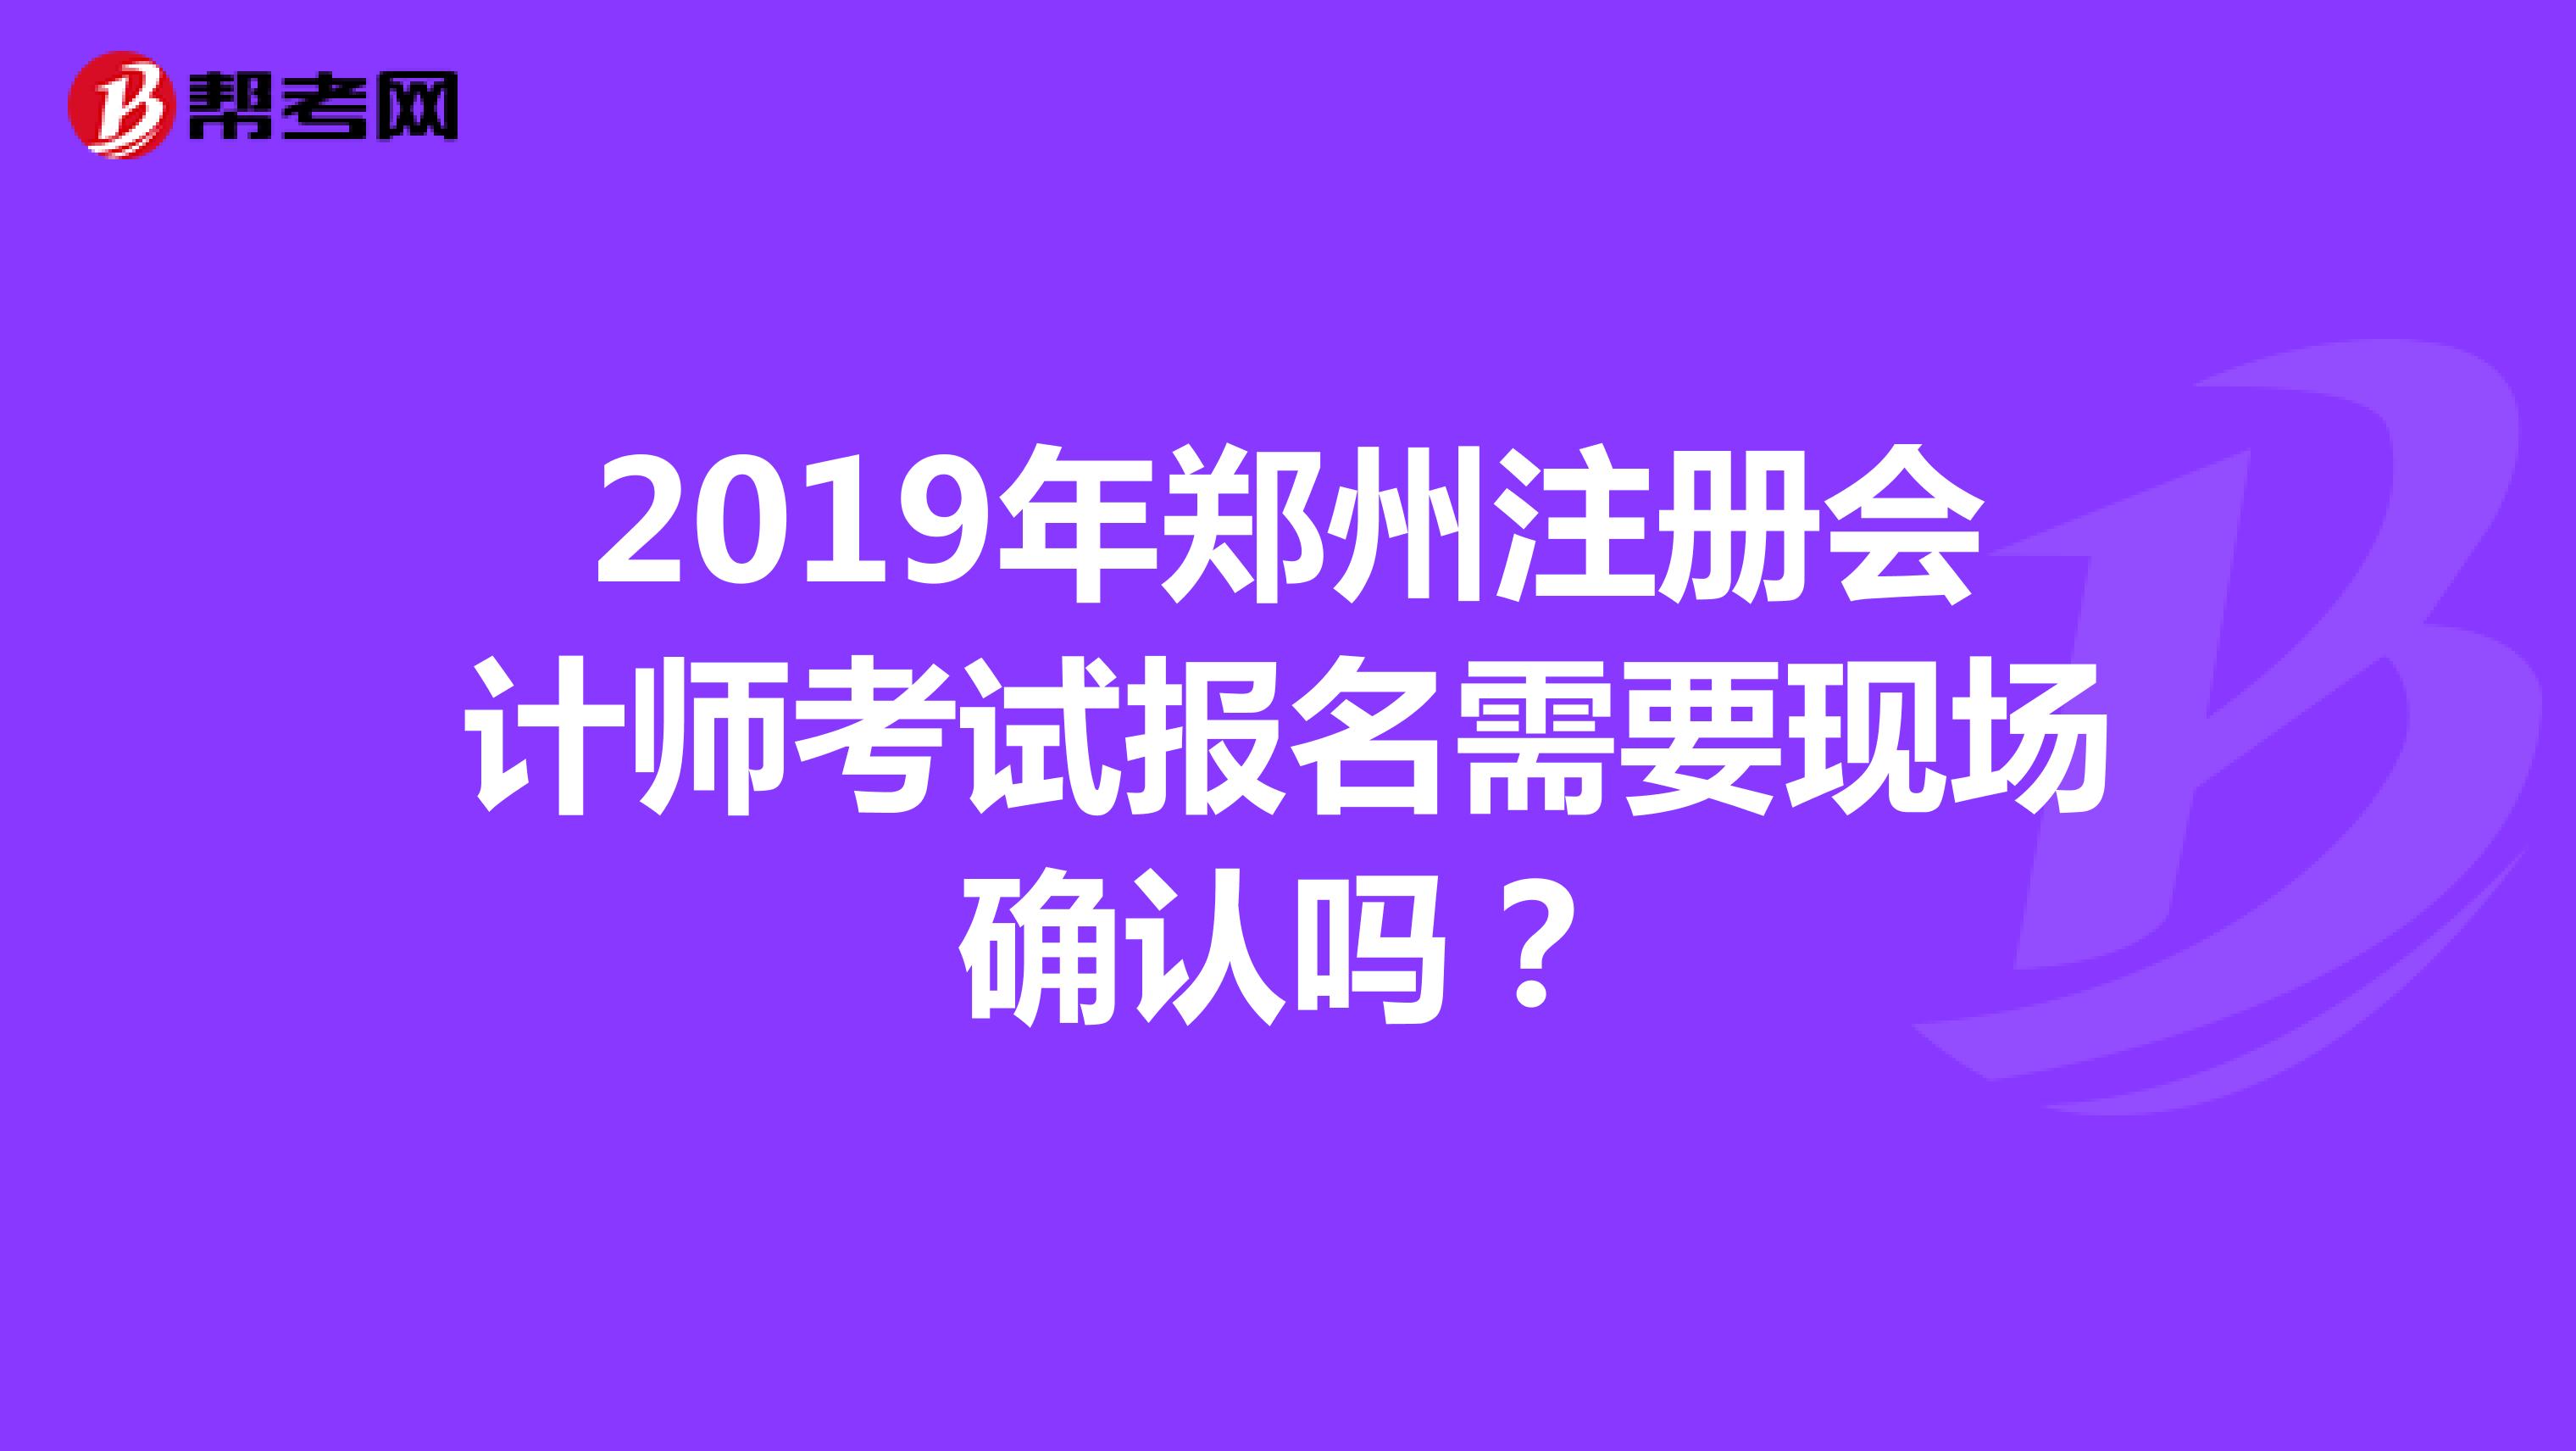 2019年郑州注册会计师考试报名需要现场确认吗？